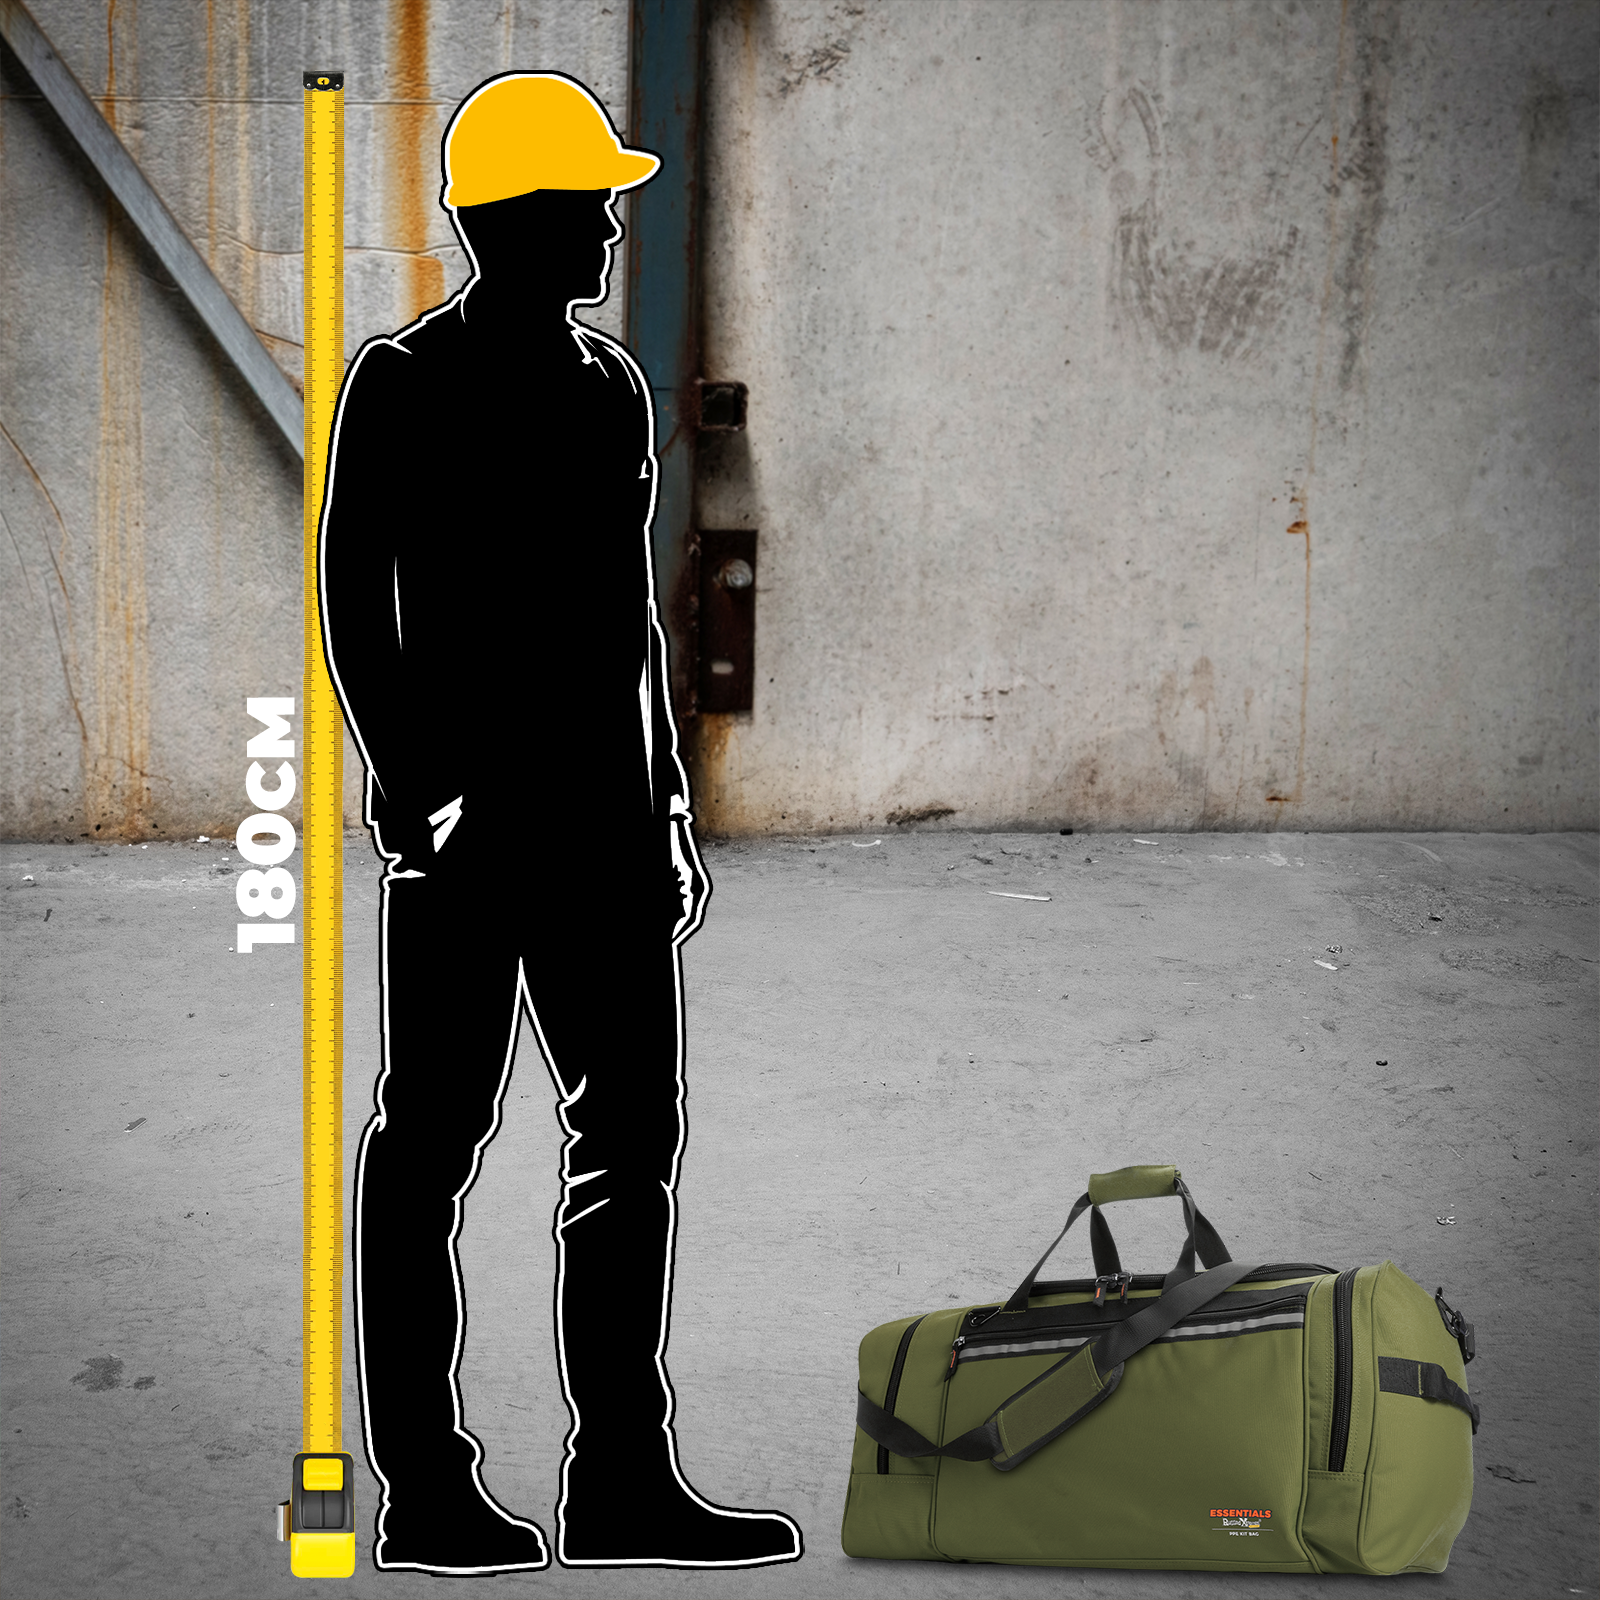 PPE Kit Bag - Canvas